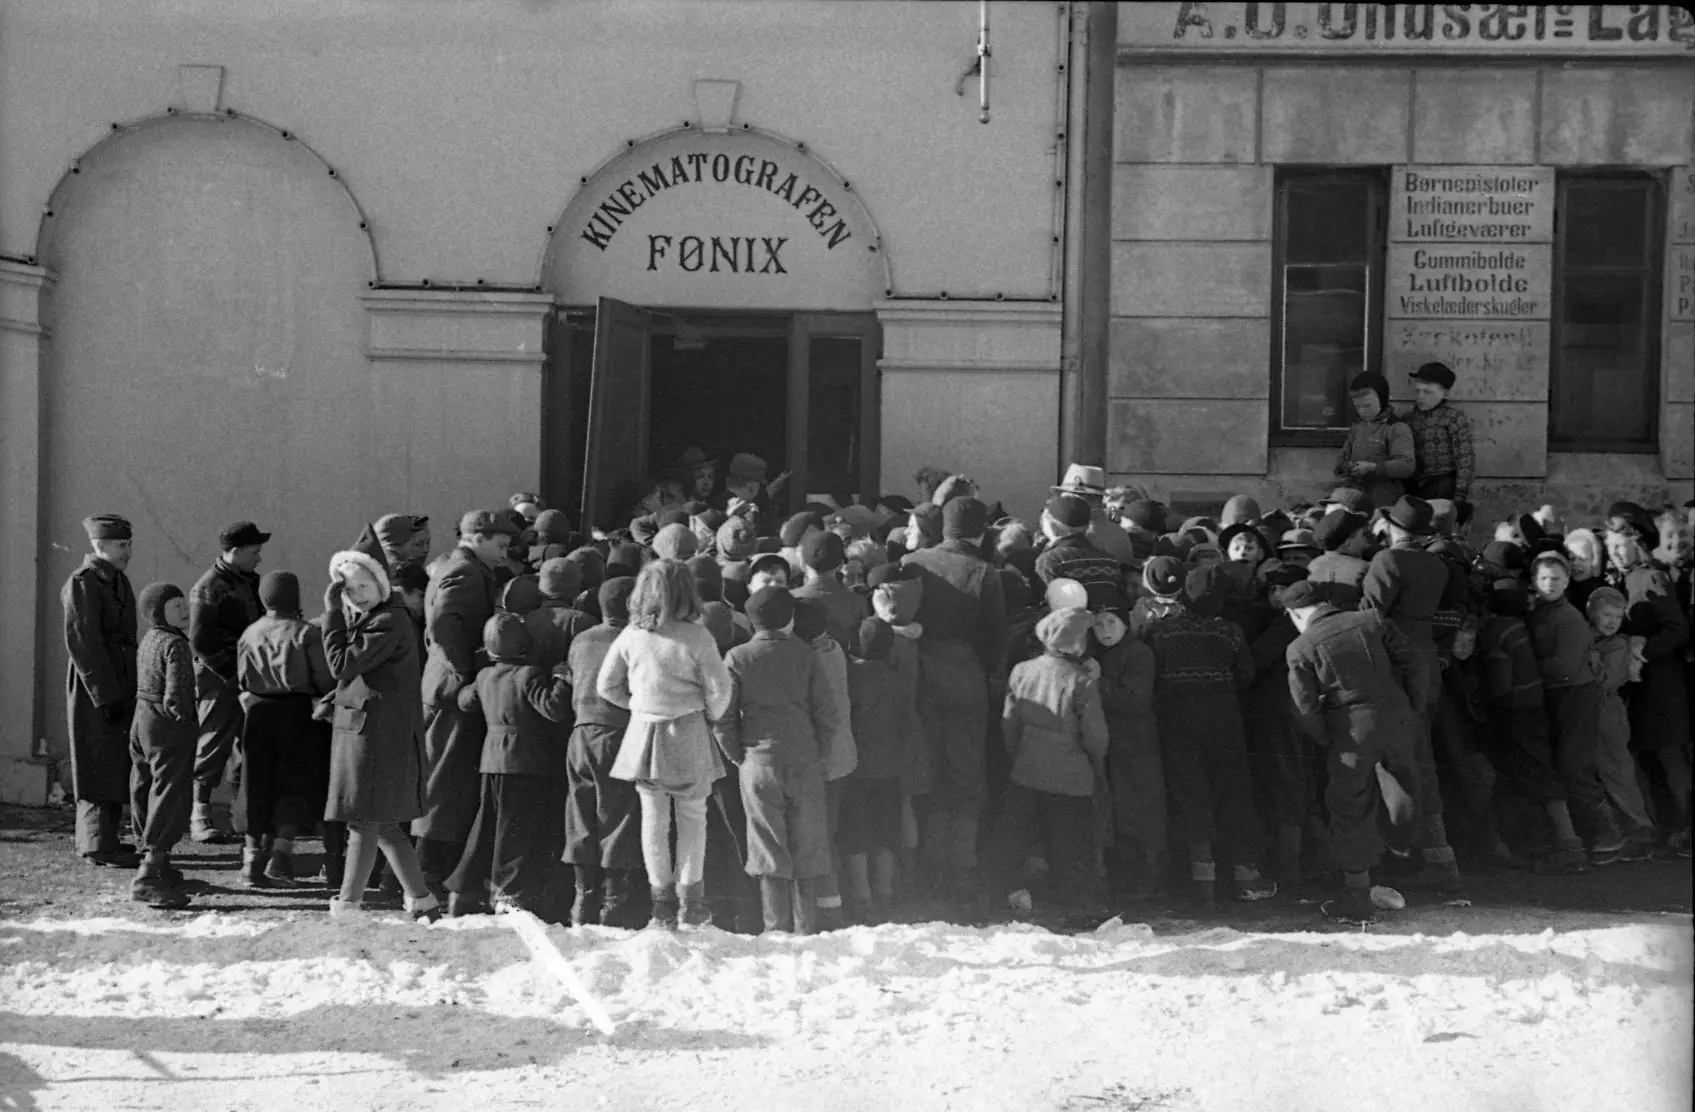 Foto fra Fønix kino i Skippergata, 1932. Foto Agderbilder.